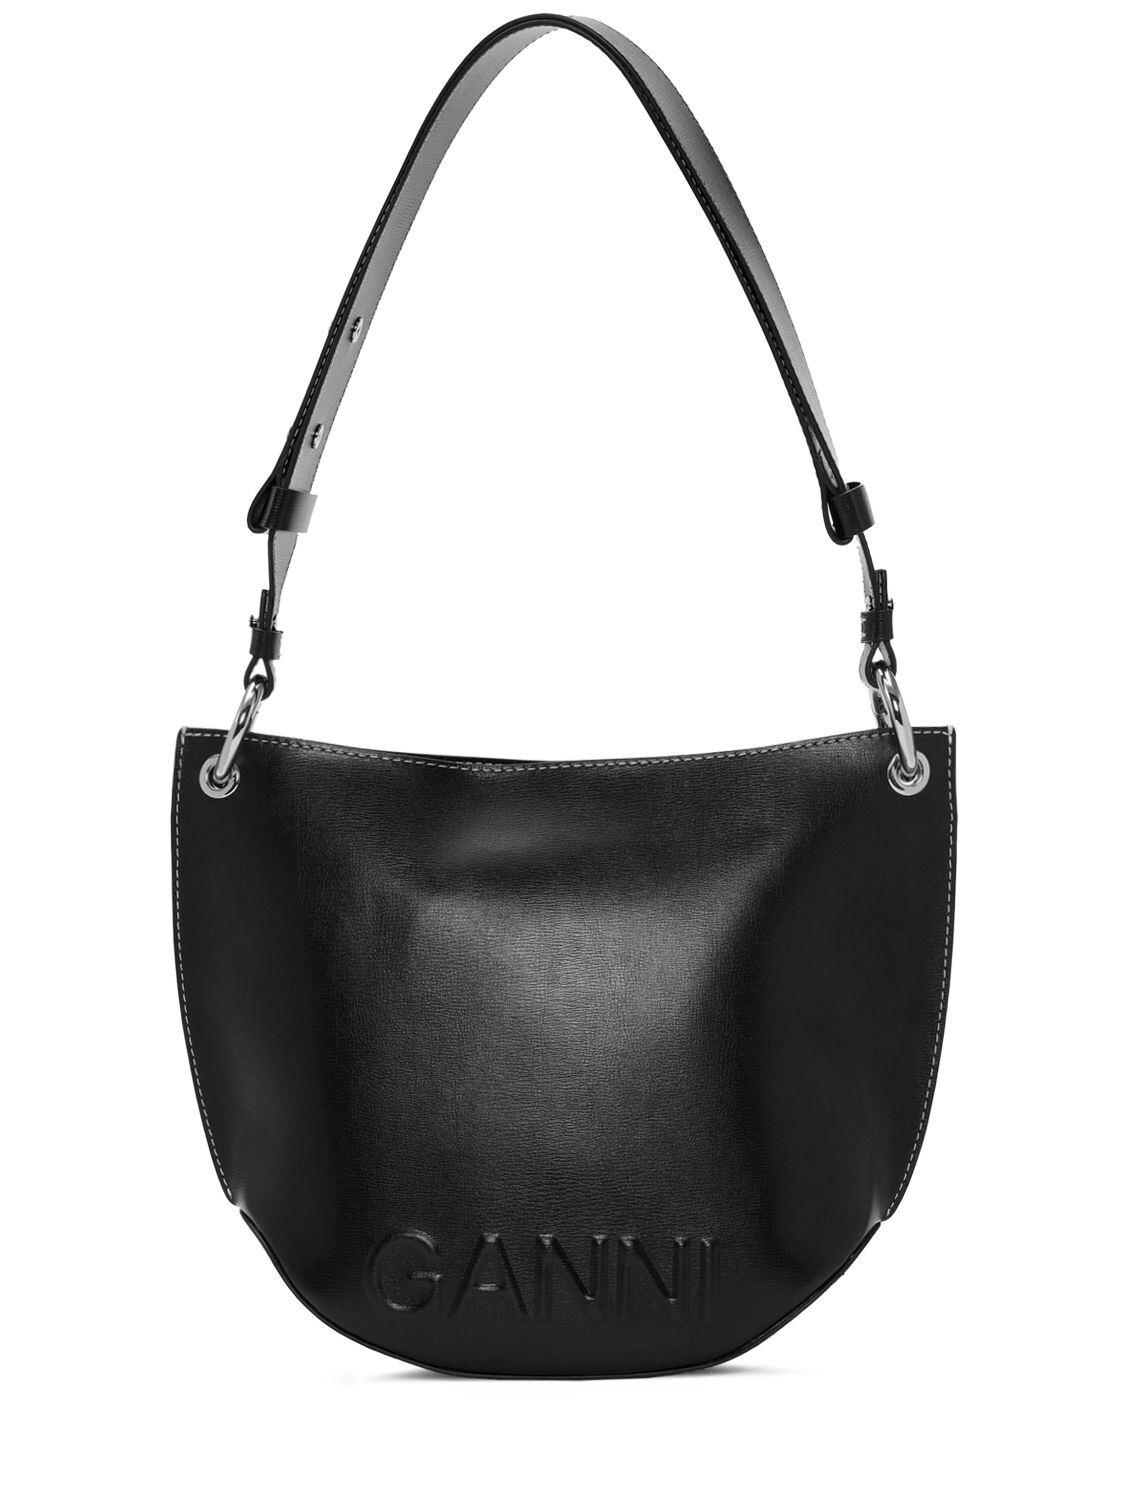 GANNI Medium Banner Hobo Leather Shoulder Bag